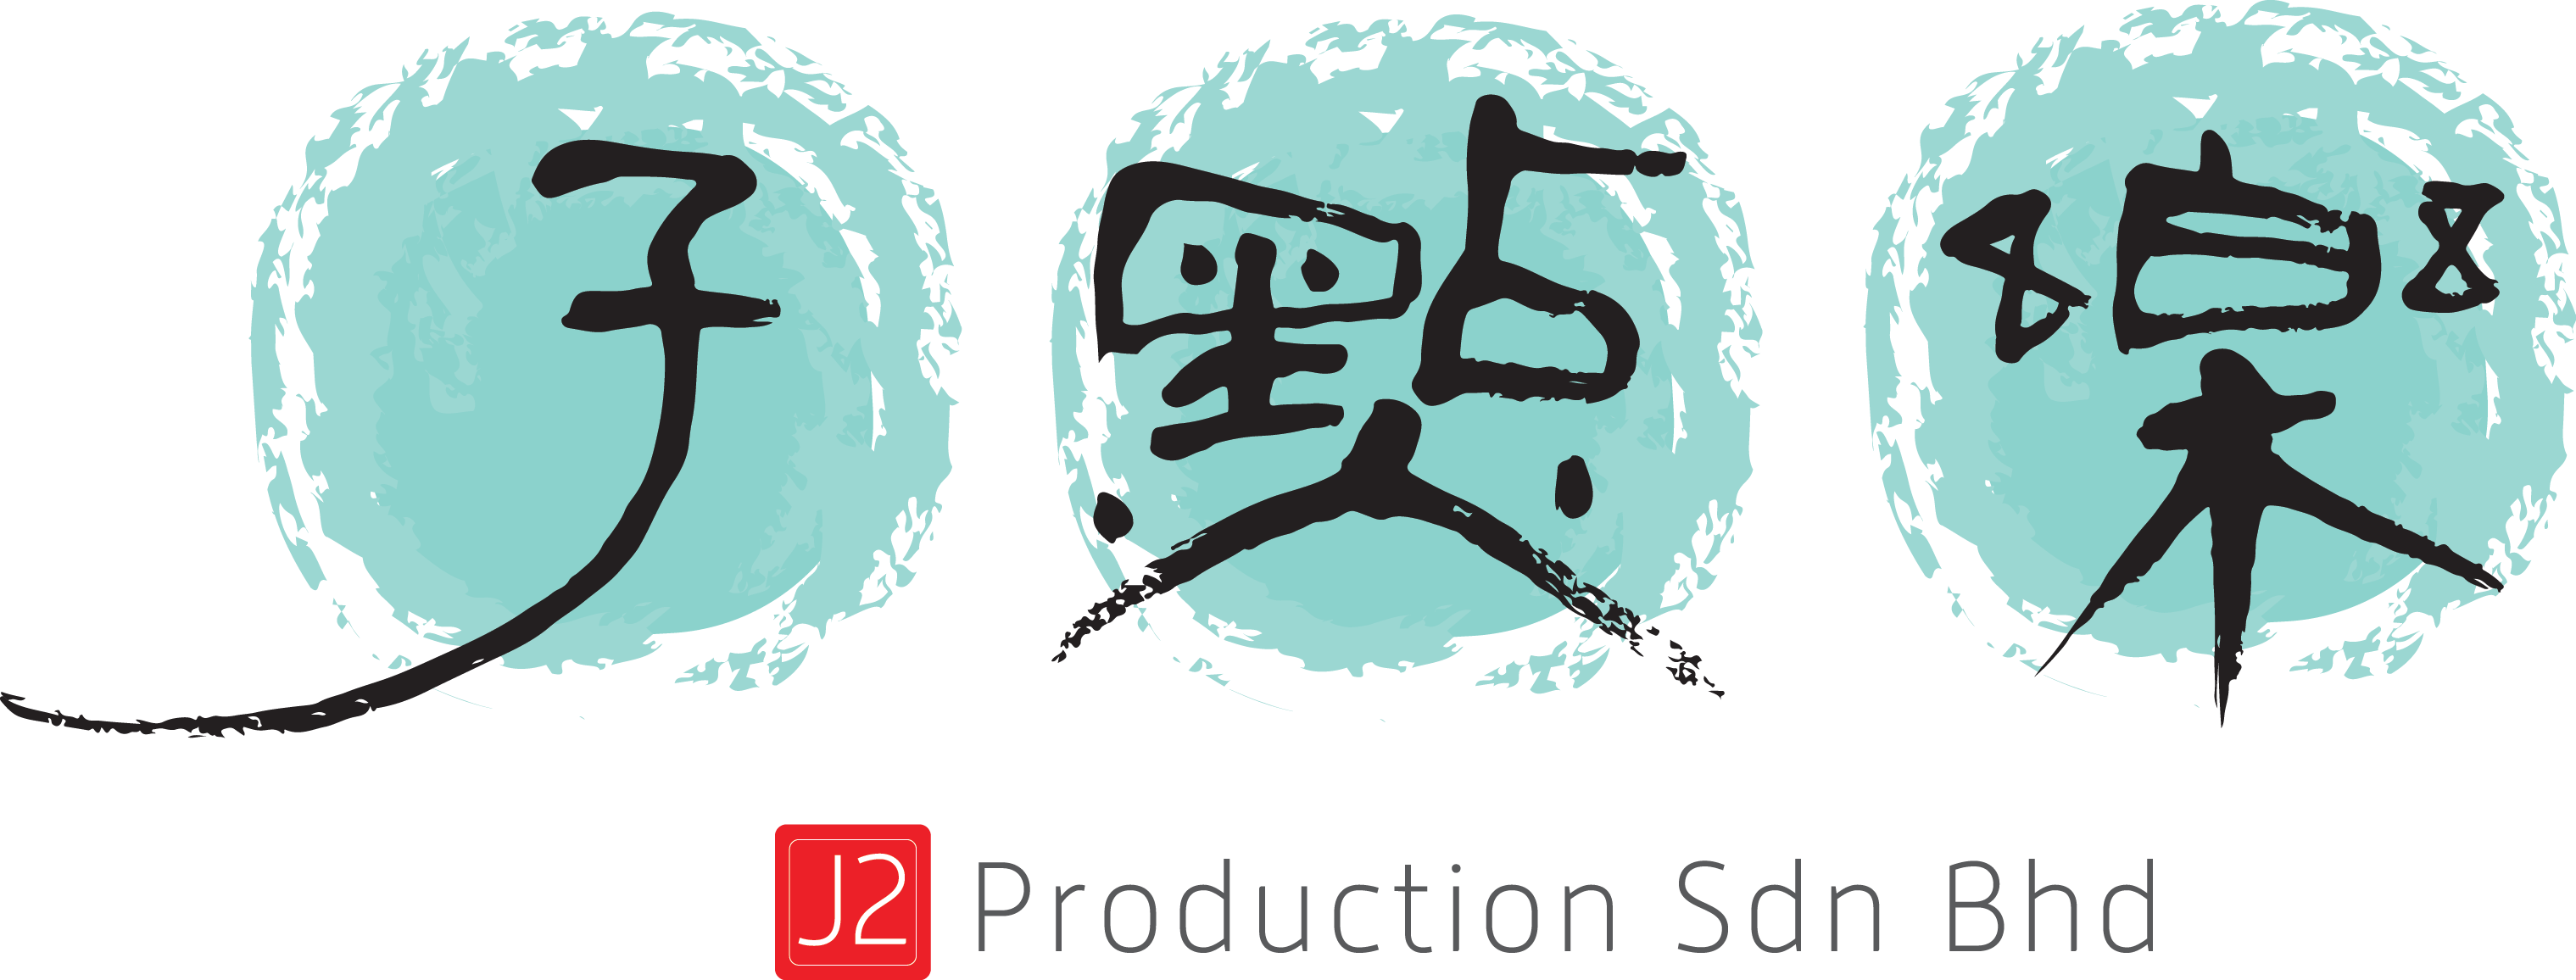 J2Production